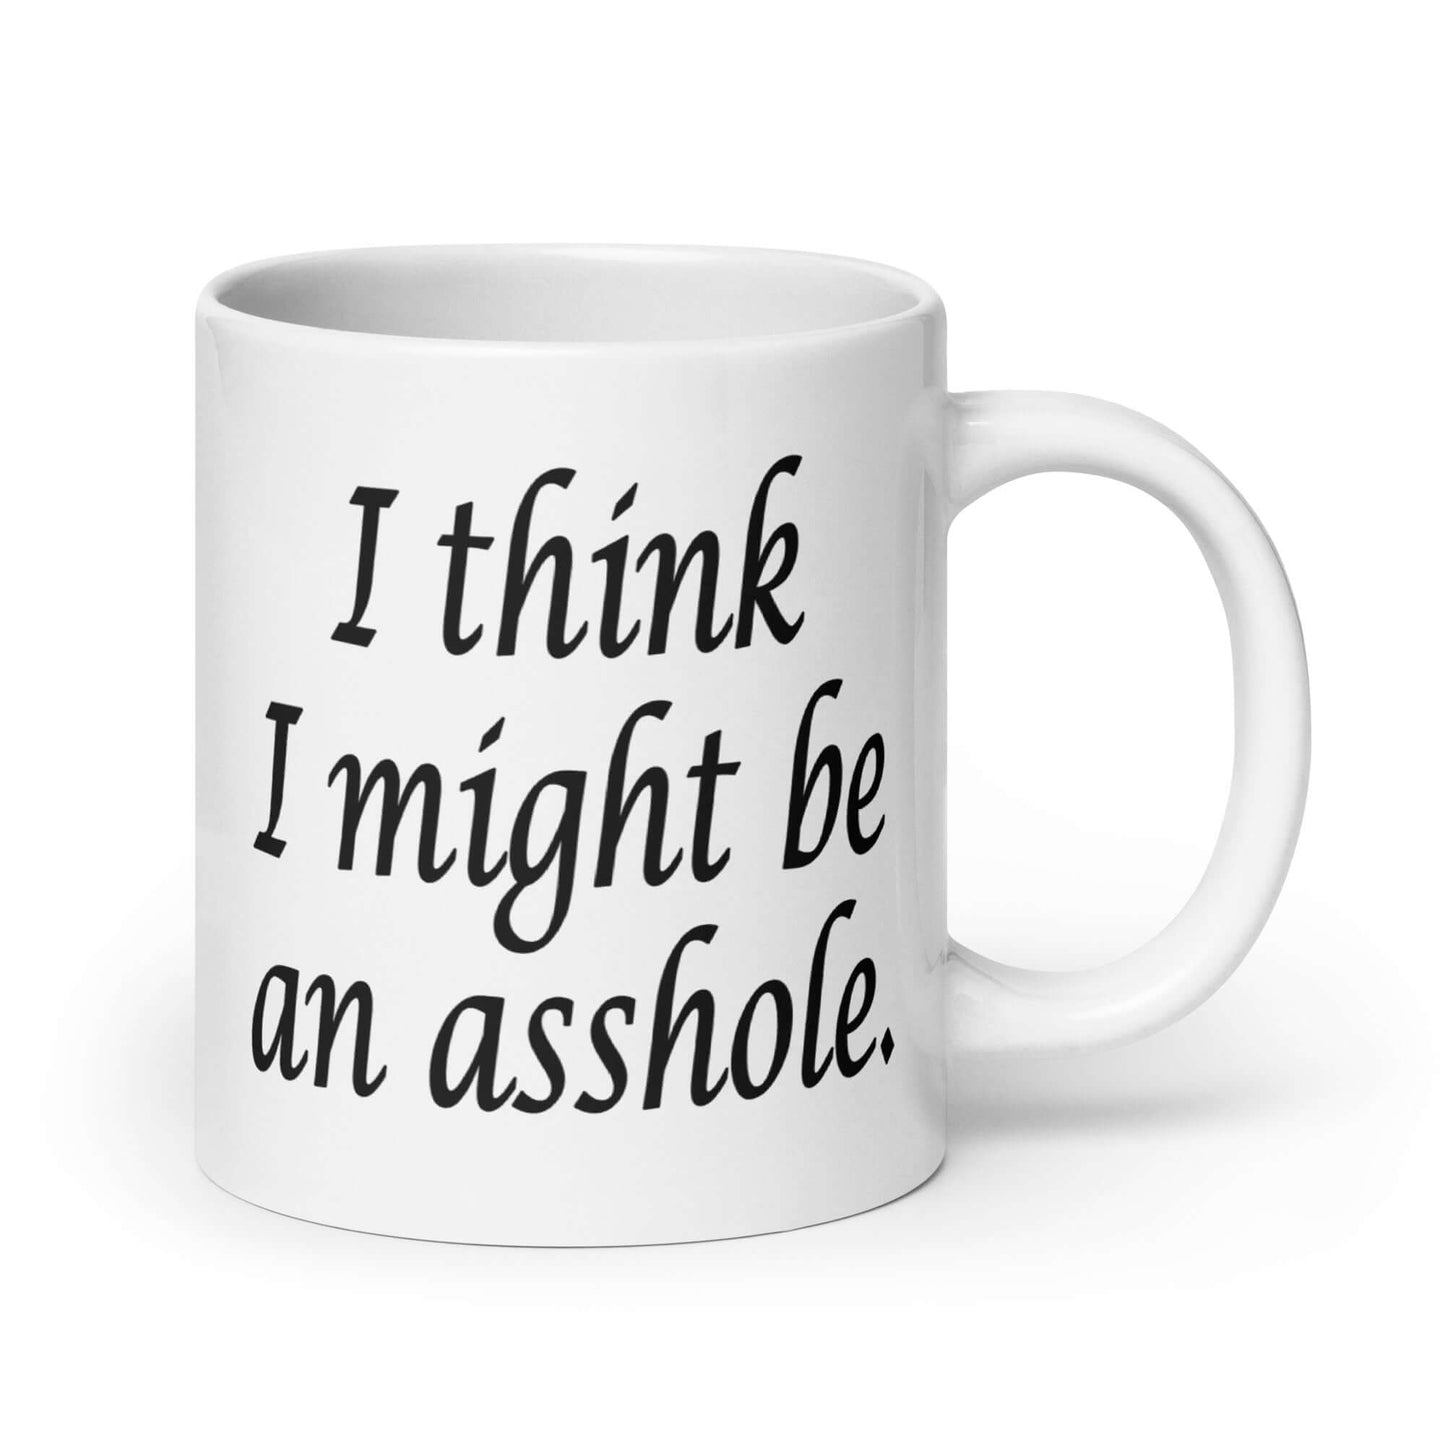 I think I might be an asshole coffee mug